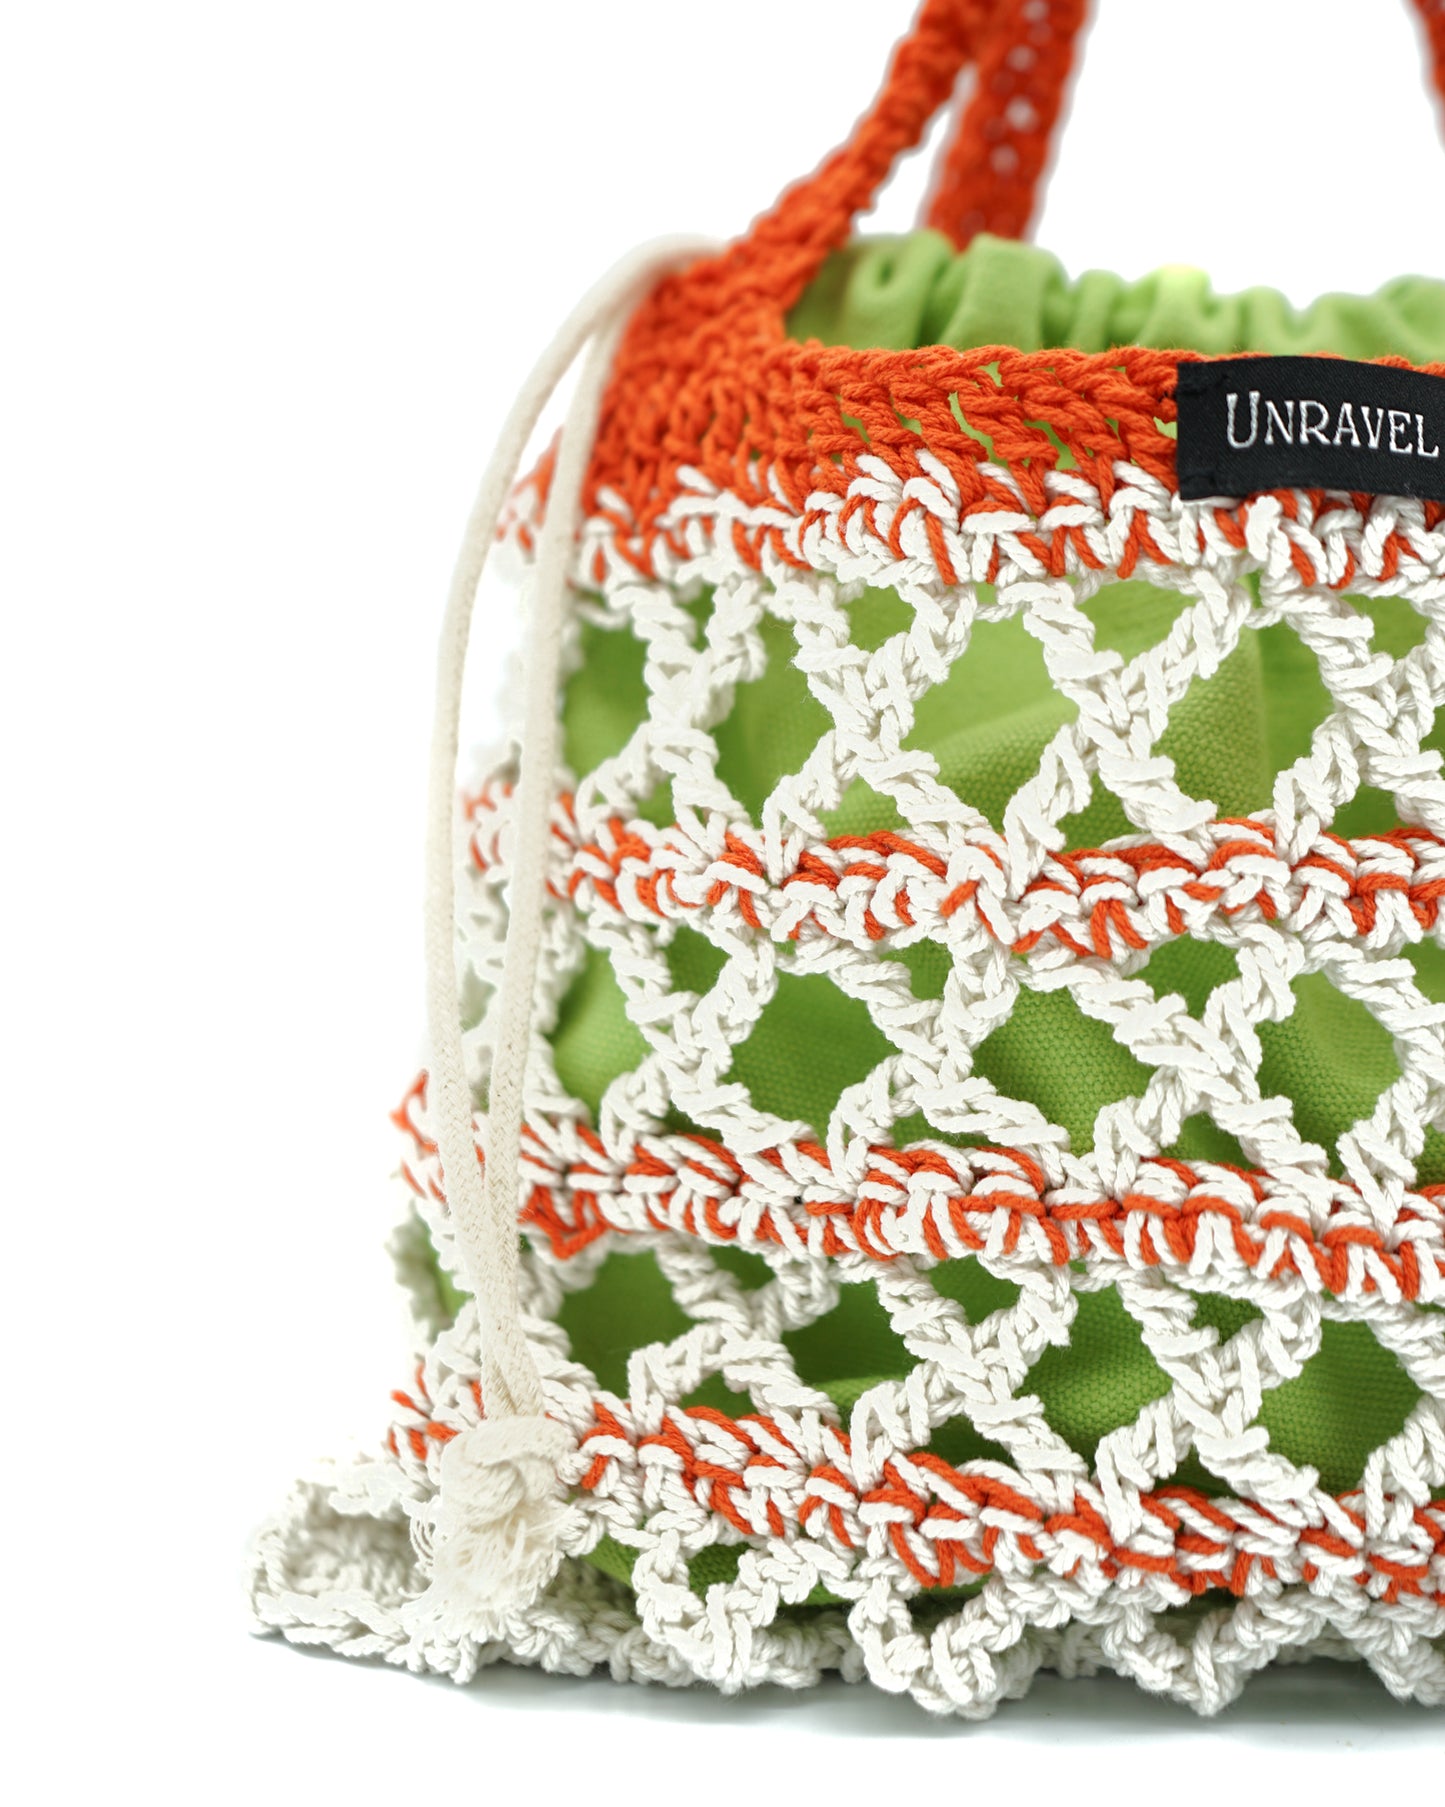 Mimosa In The Garden Crochet Handbag